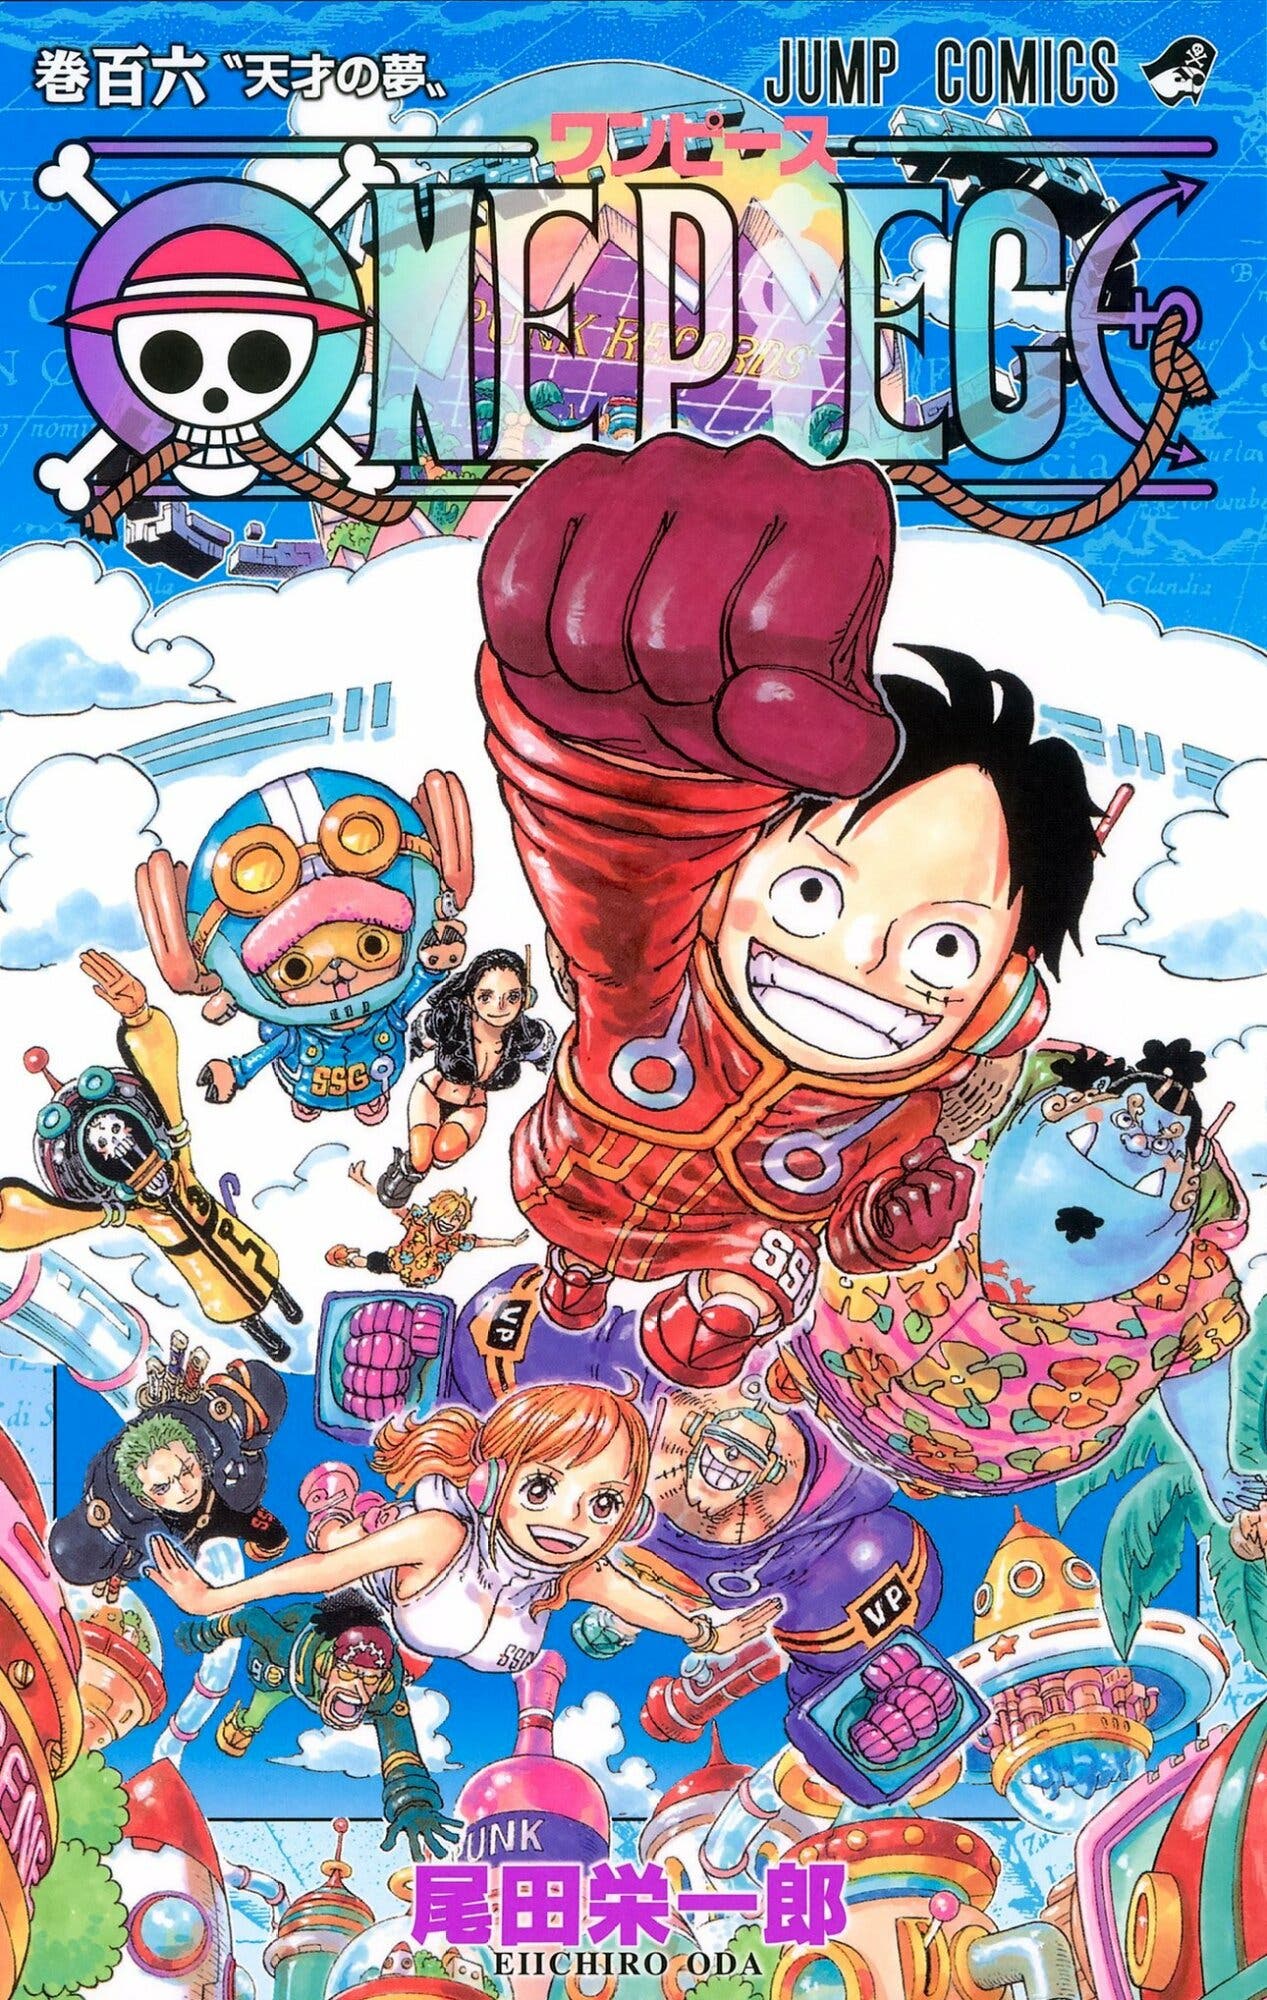 Maracanaú transmite episódio 1071 da série One Piece